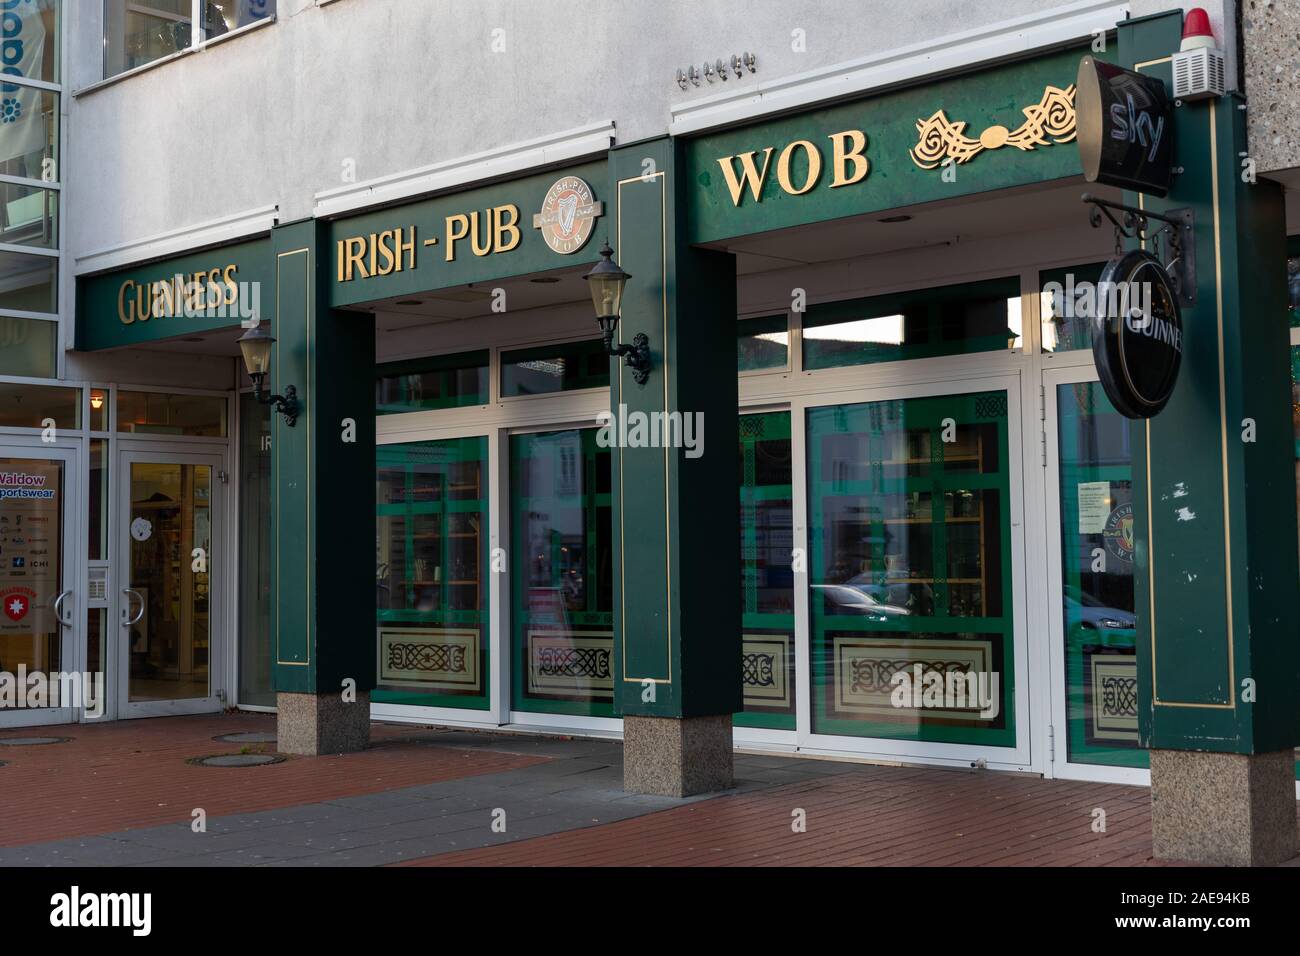 Wolfsburg, Germania - 5 Dicembre 2019: Irish Pub WOB nella città di Wolfsburg. È situato vicino alla principale strada pedonale. Esso attira gli appassionati di birreria irlandese. Foto Stock